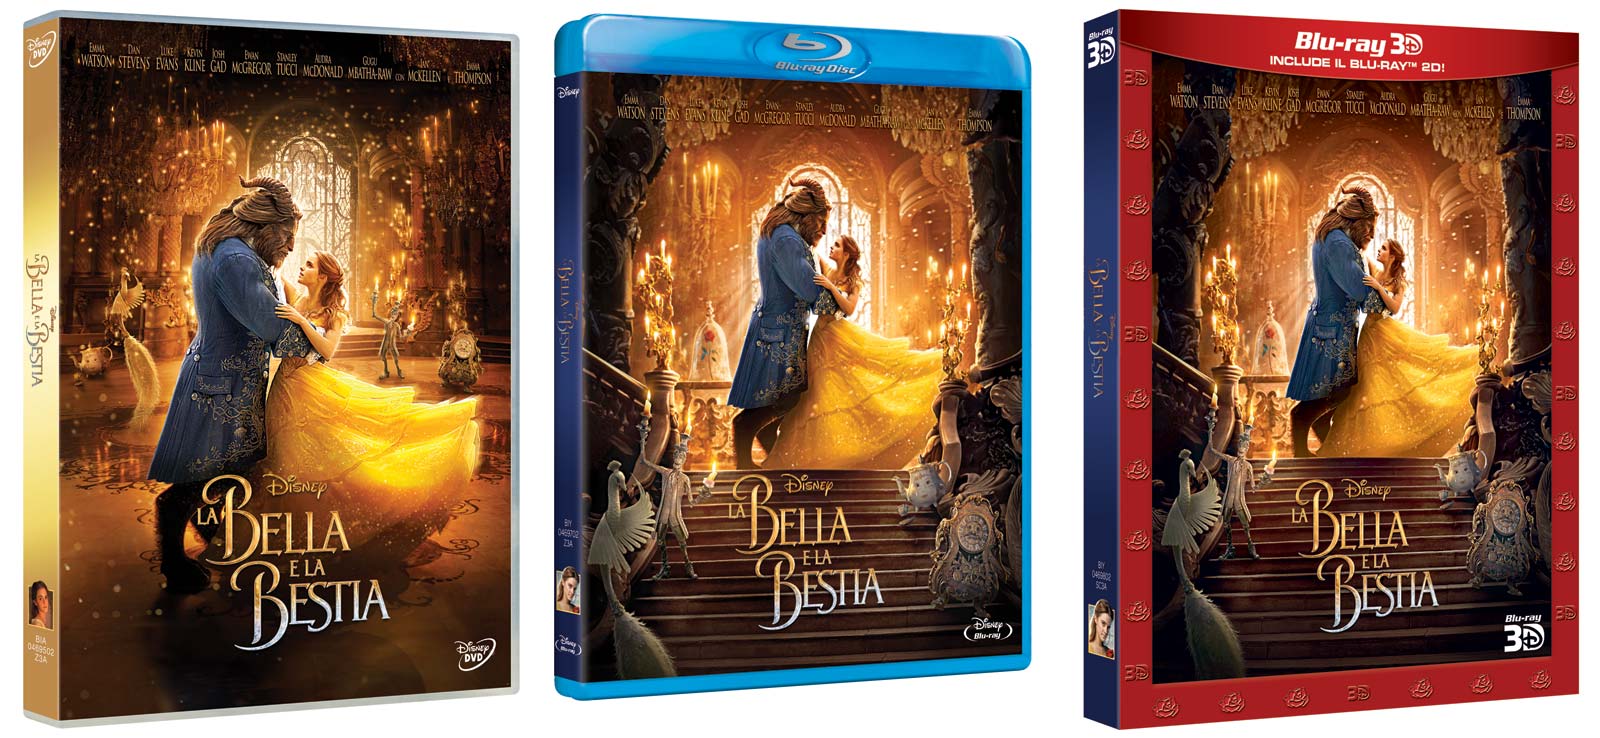 La Bella e la Bestia con Emma Watson e Dan Stevens in DVD, Blu-ray e BD3D con tanti Extra